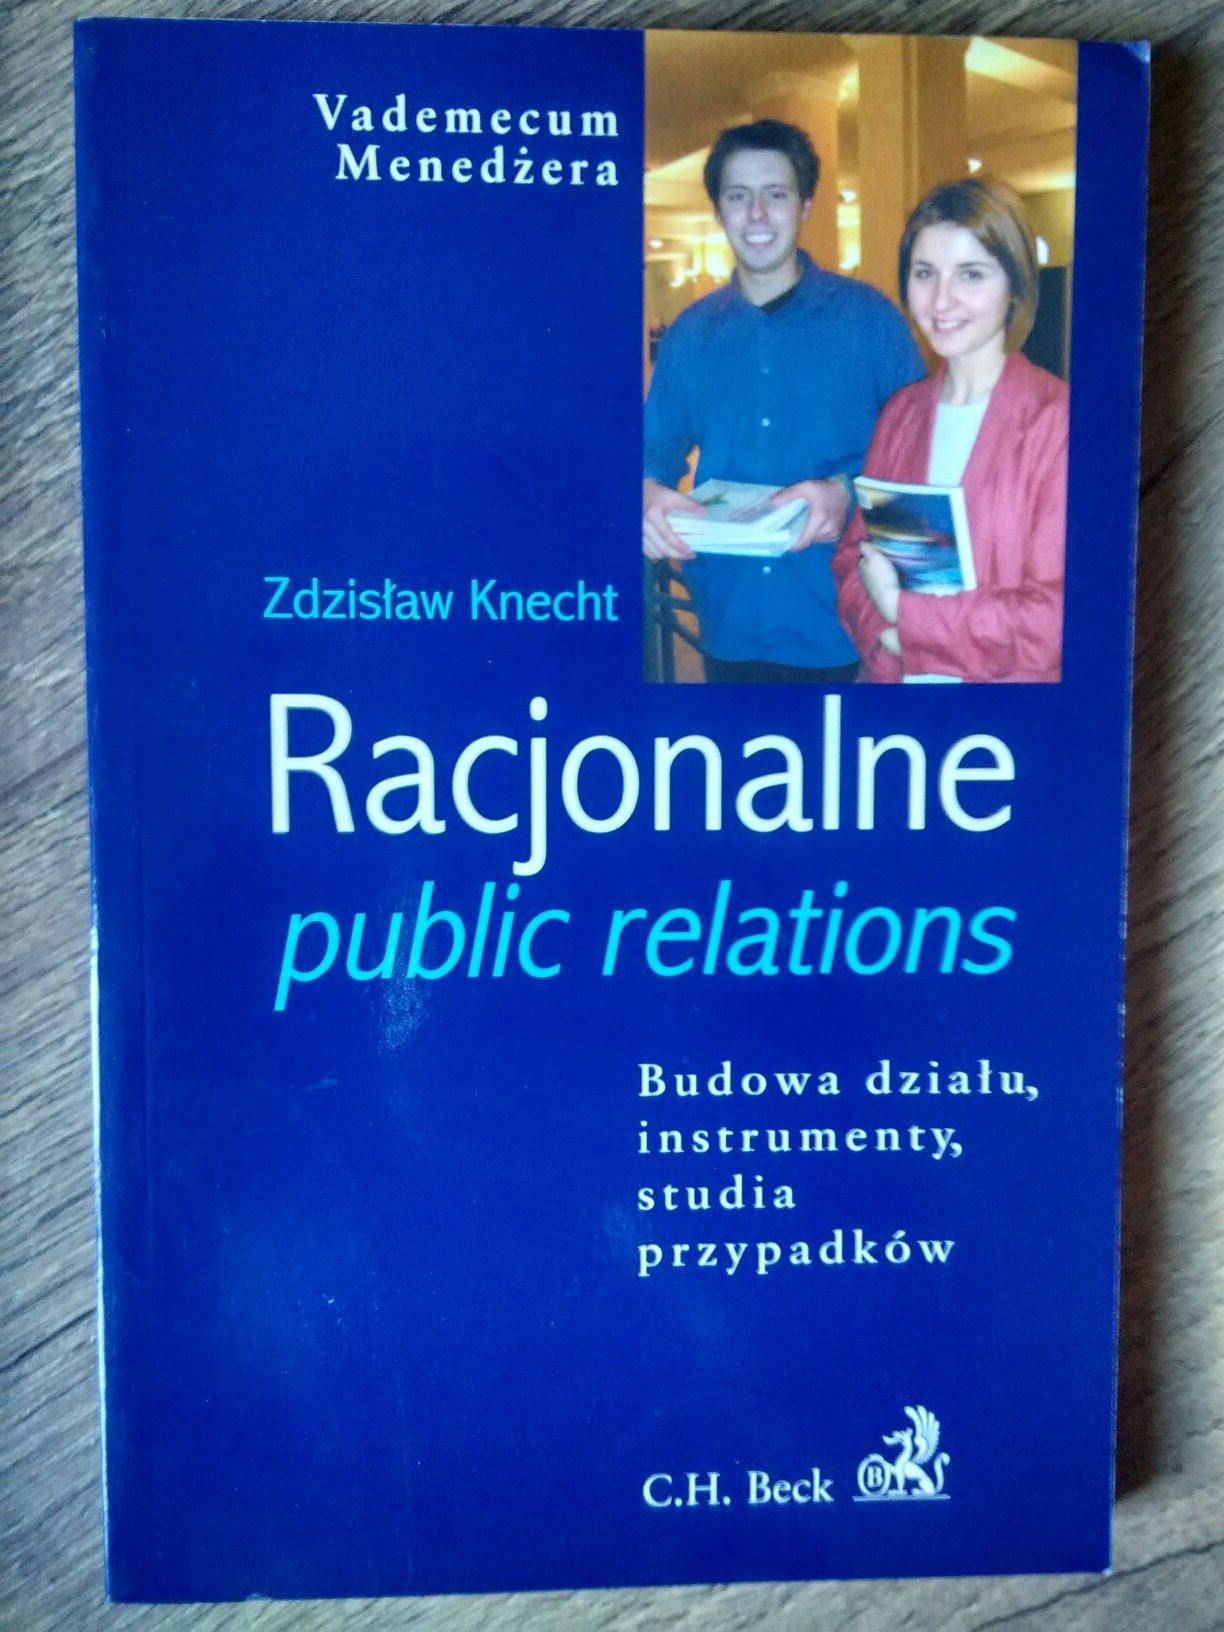 Racjonalne Public Relations - Zdzisław Knecht - PR, marketing, reklama